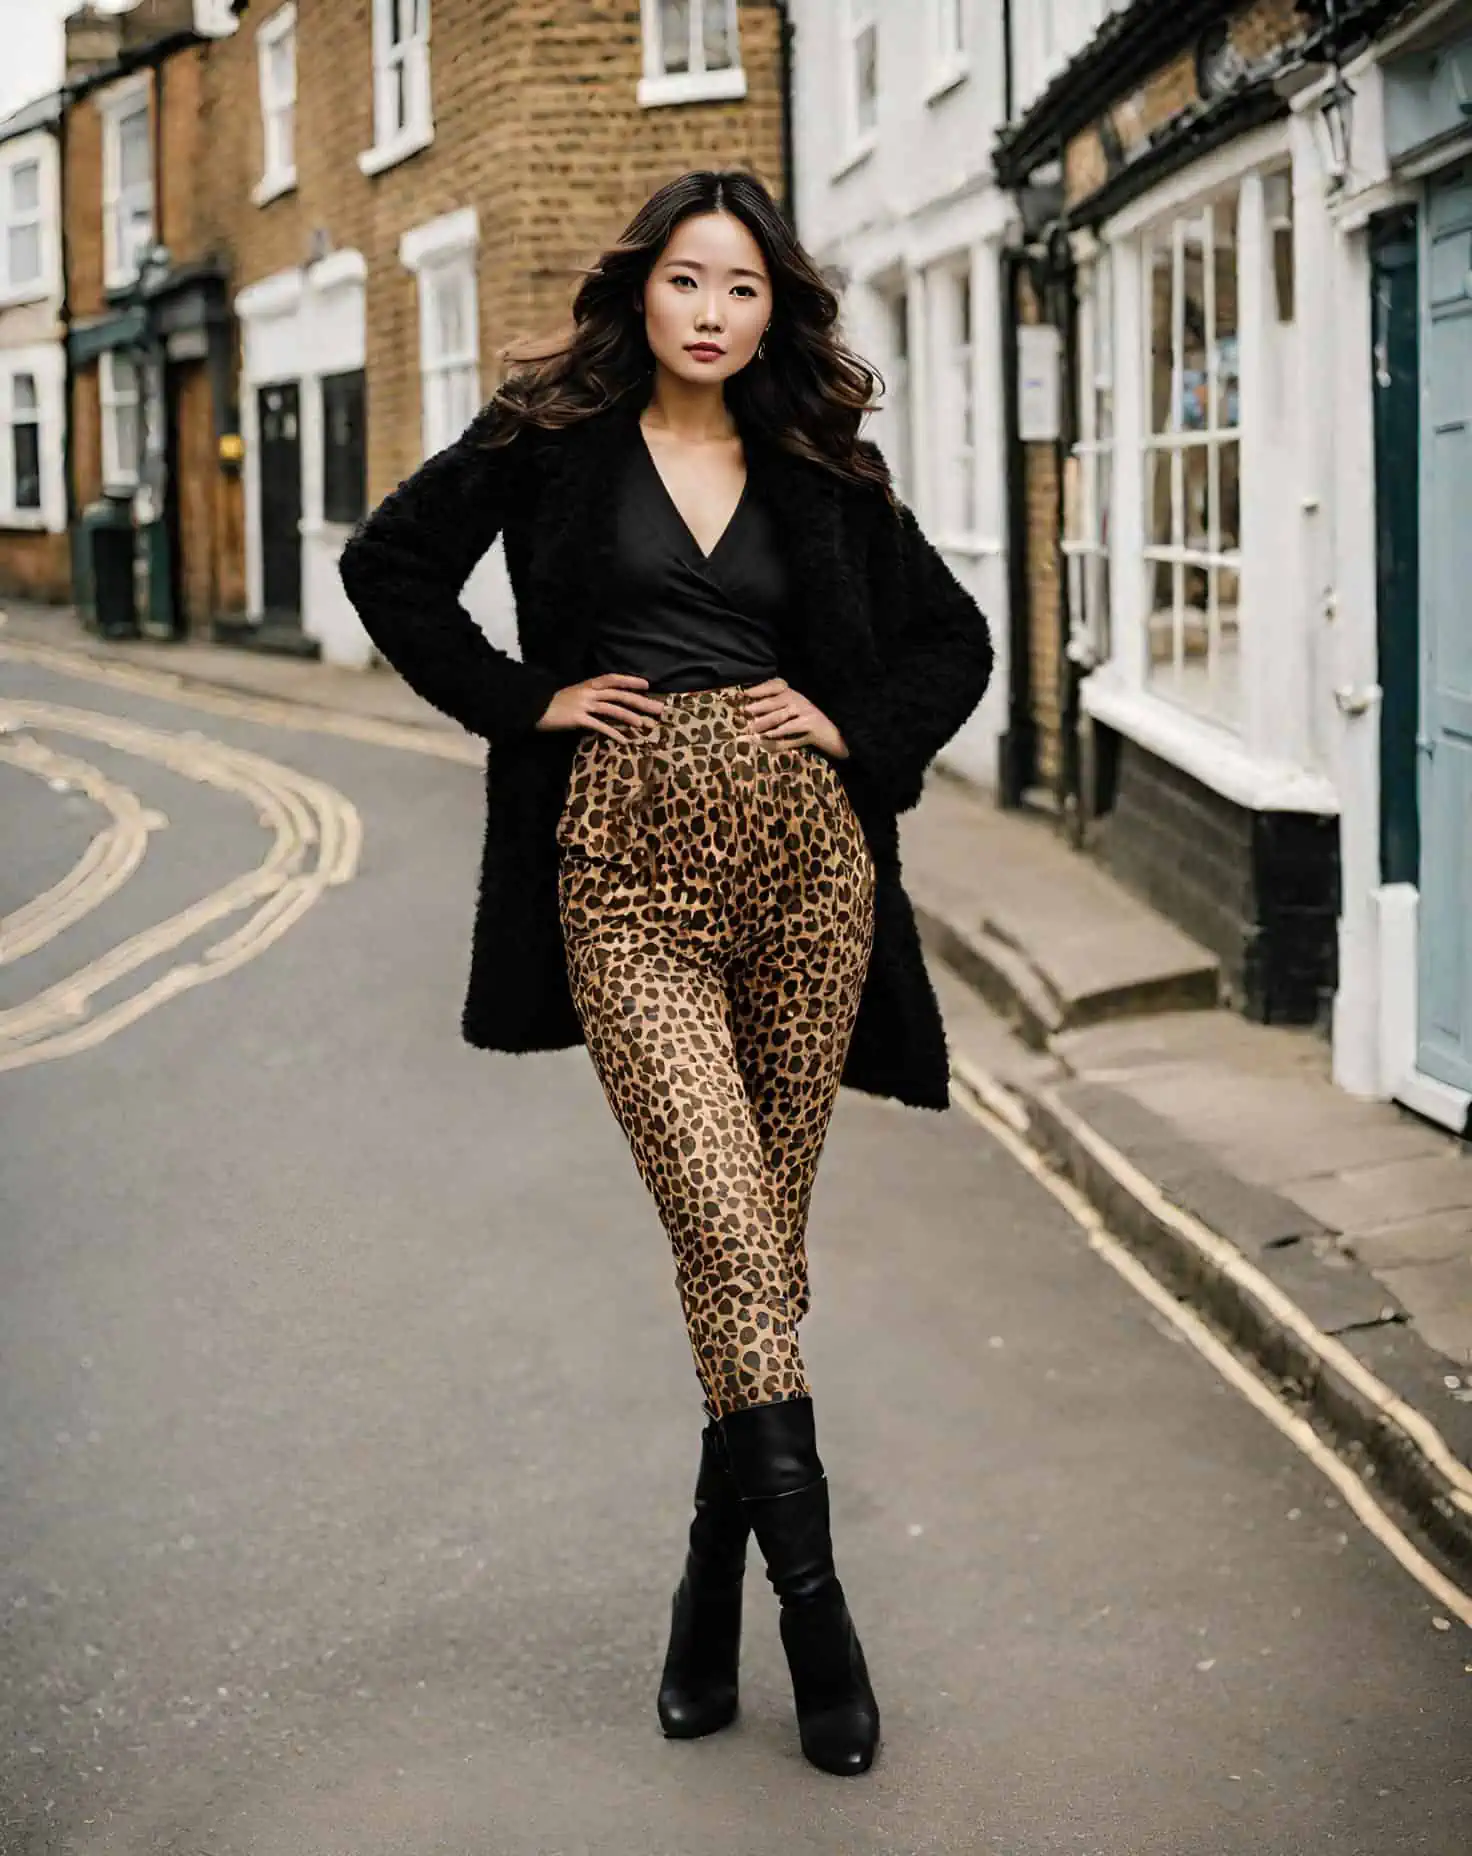 Black Leopard – Print High Waisted Leggings for Women – LEGGINGSPHERE